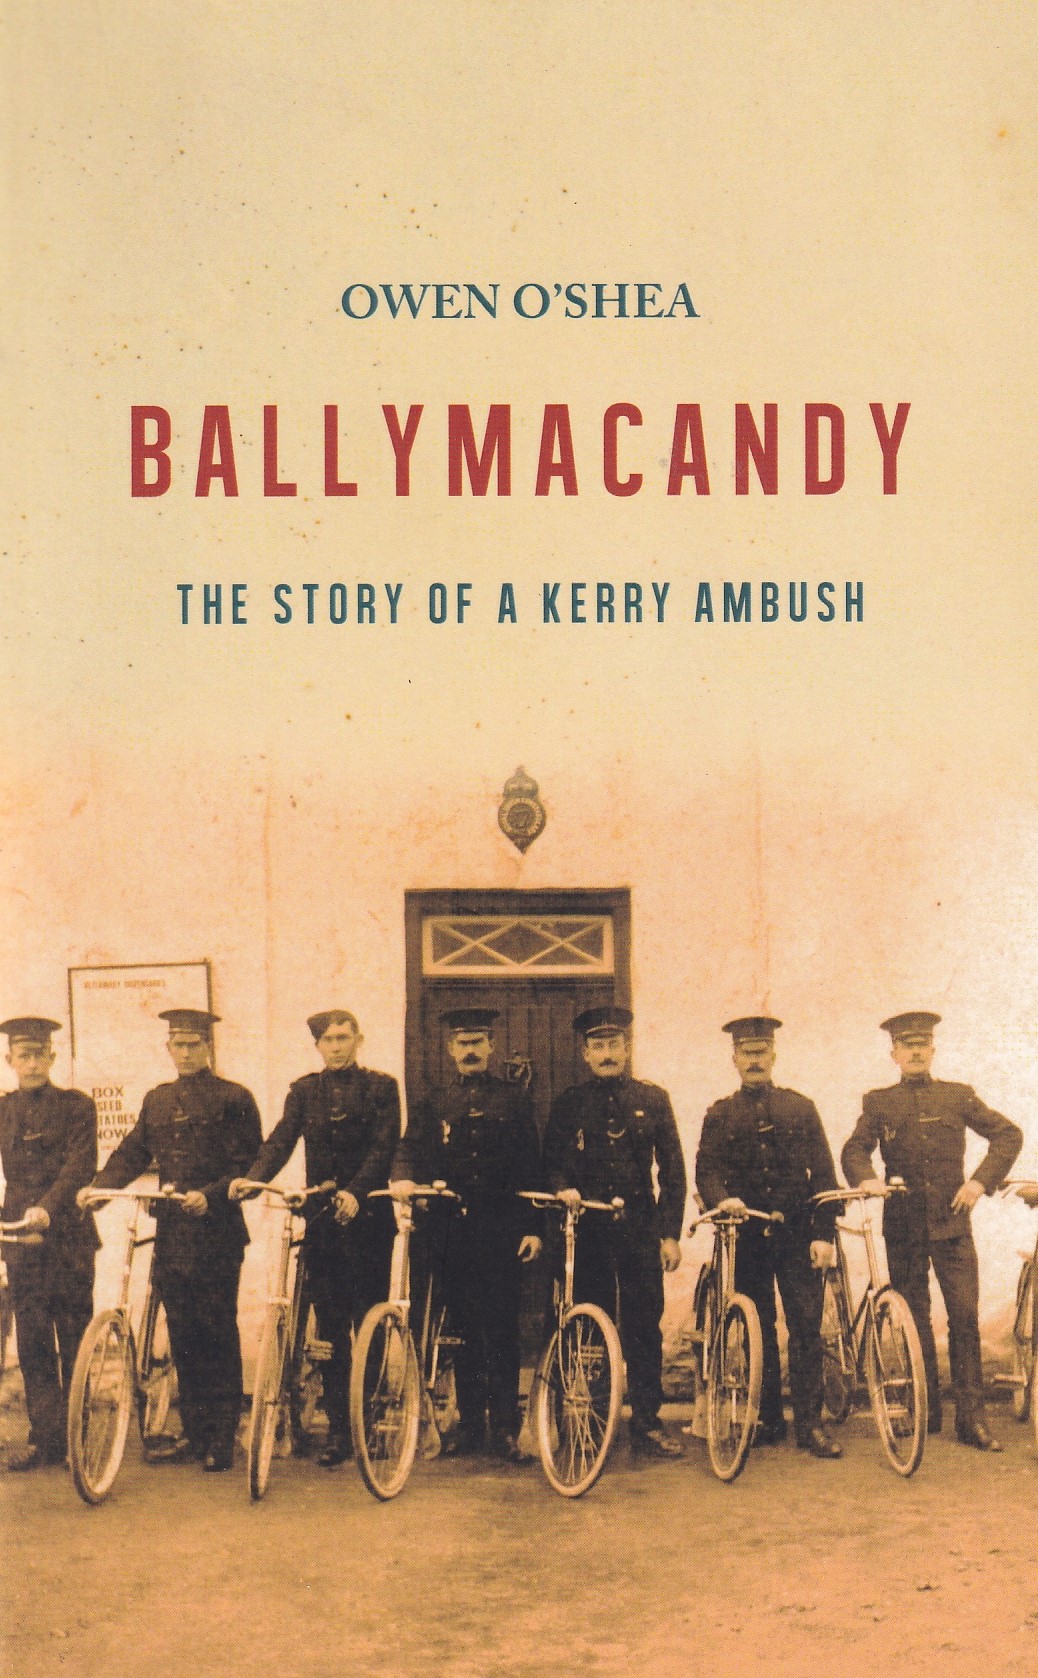 Ballymacandy: The Story of a Kerry Ambush by Owen O'Shea